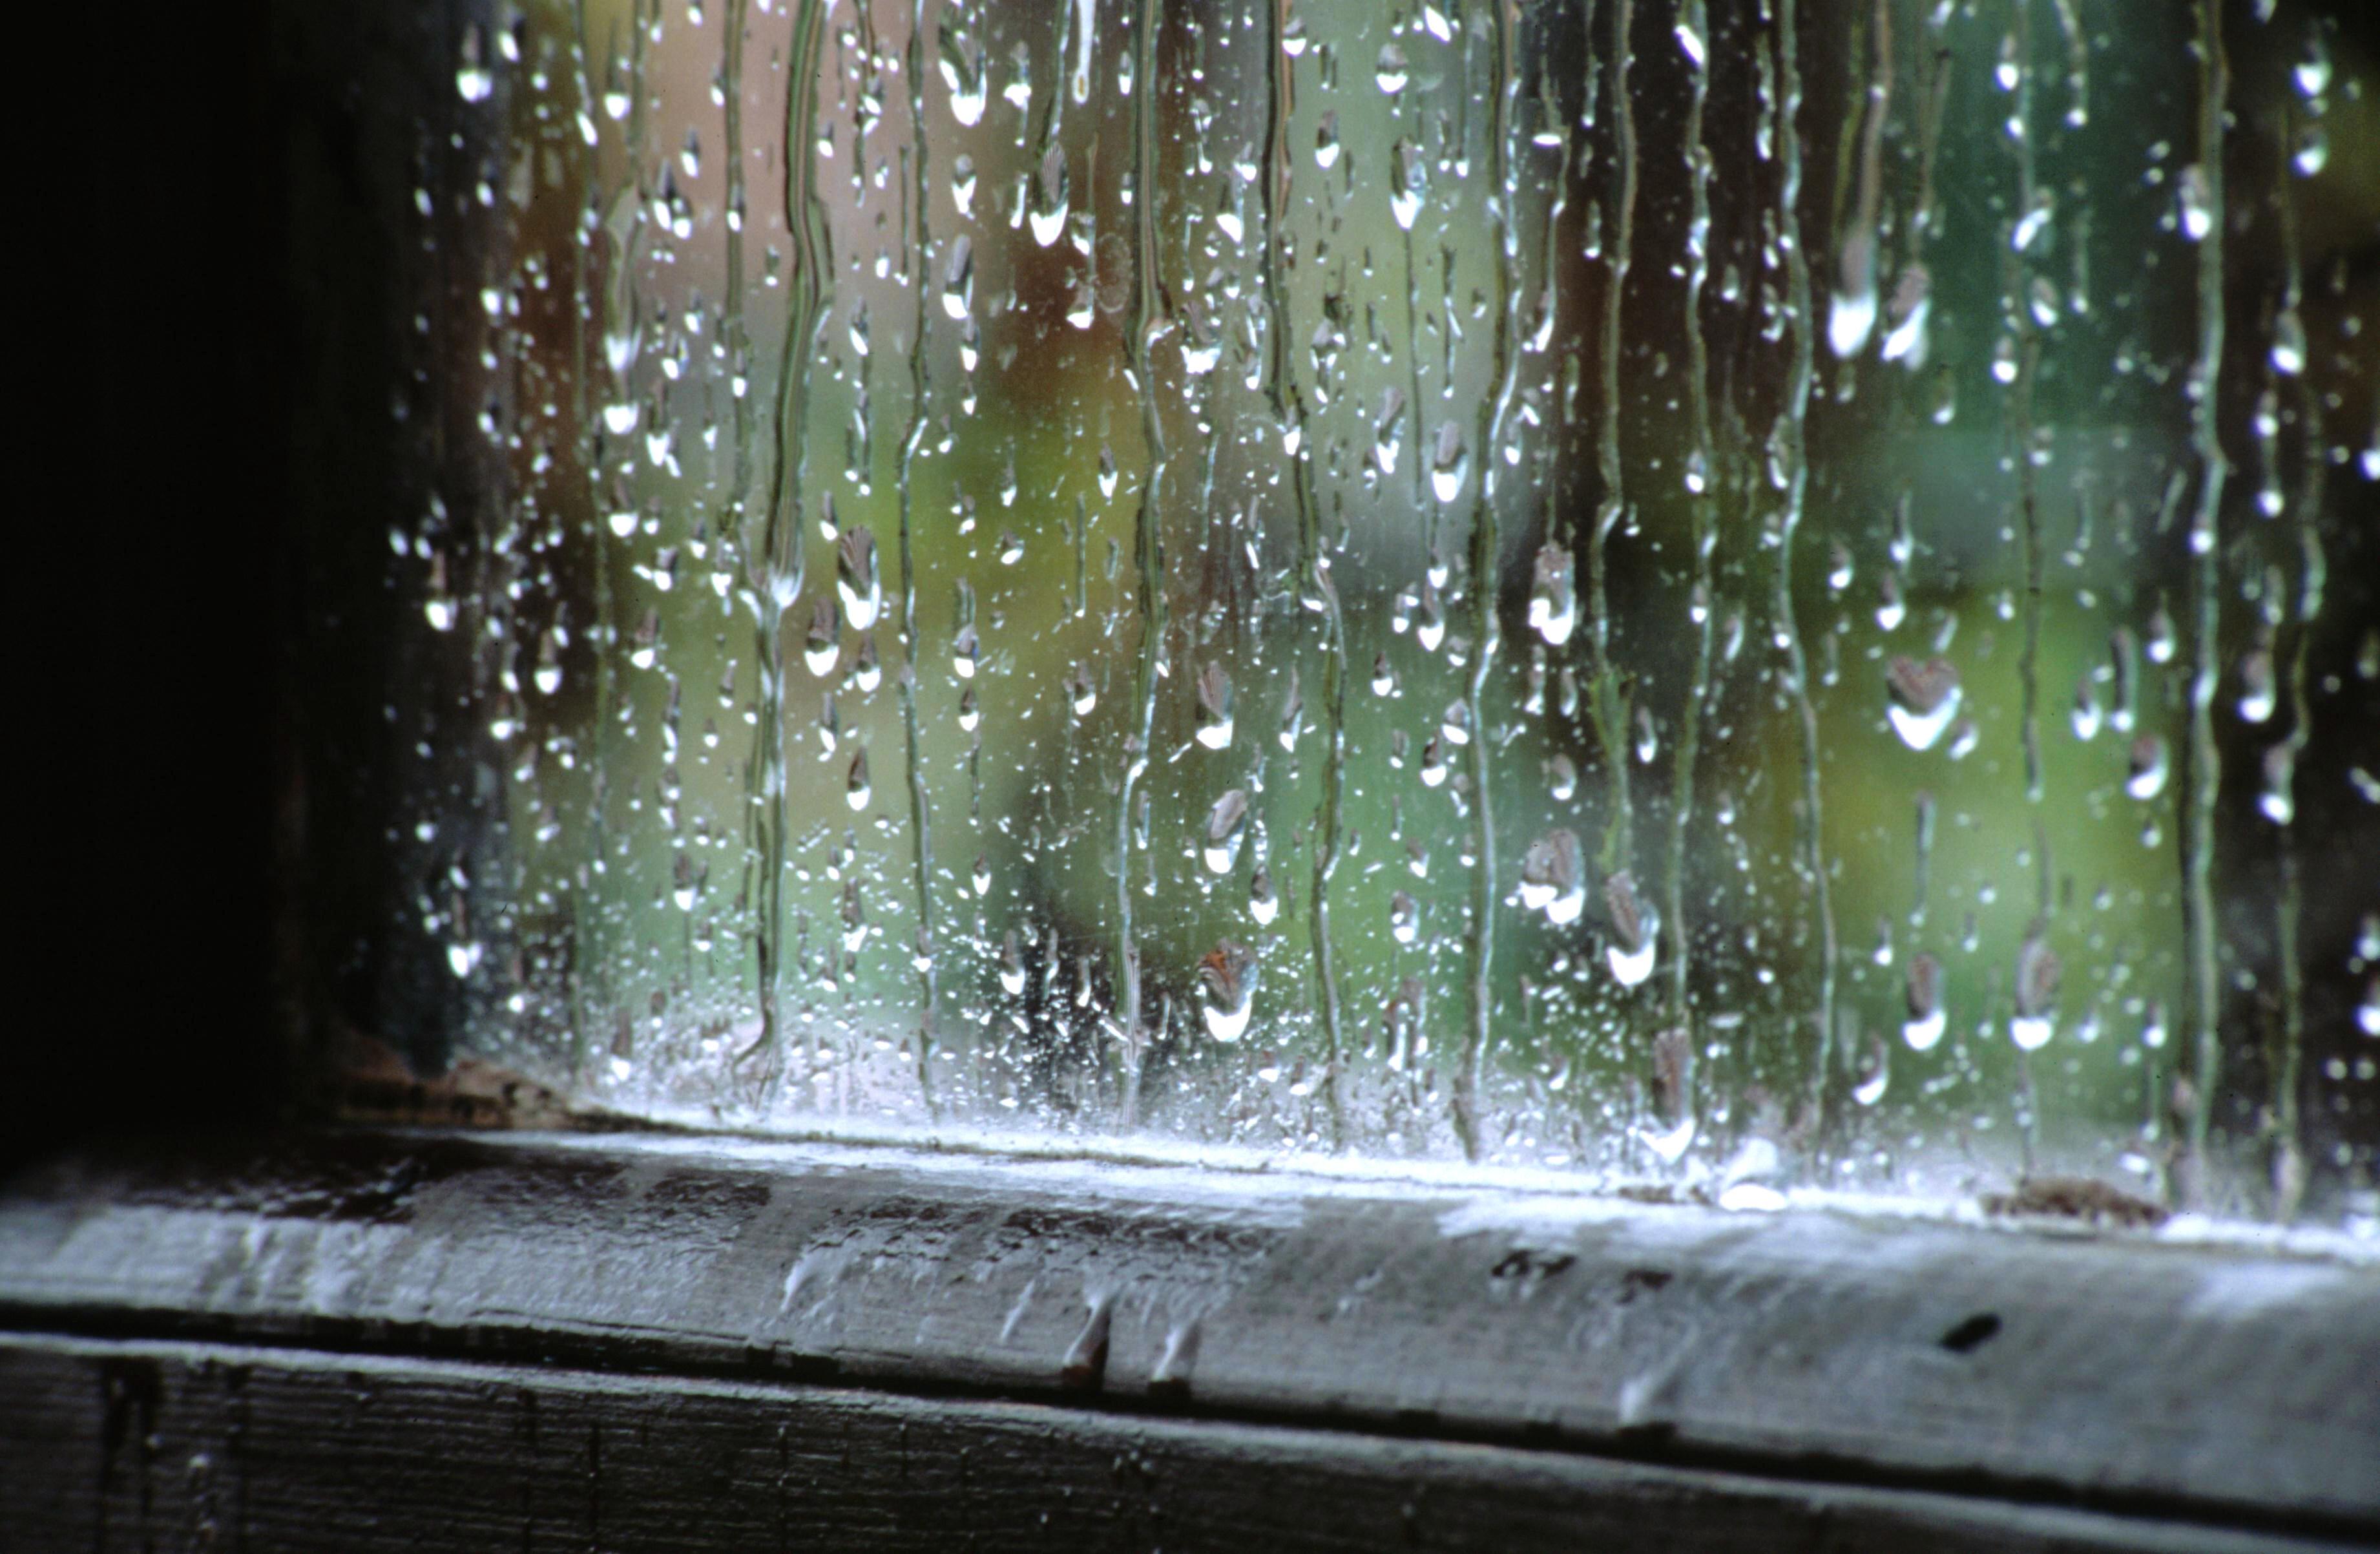 В окна стучали крупные дождевые капли. Дождь в окне. Дождь в окно стучится. Дождливое окно. Дождь за окном.